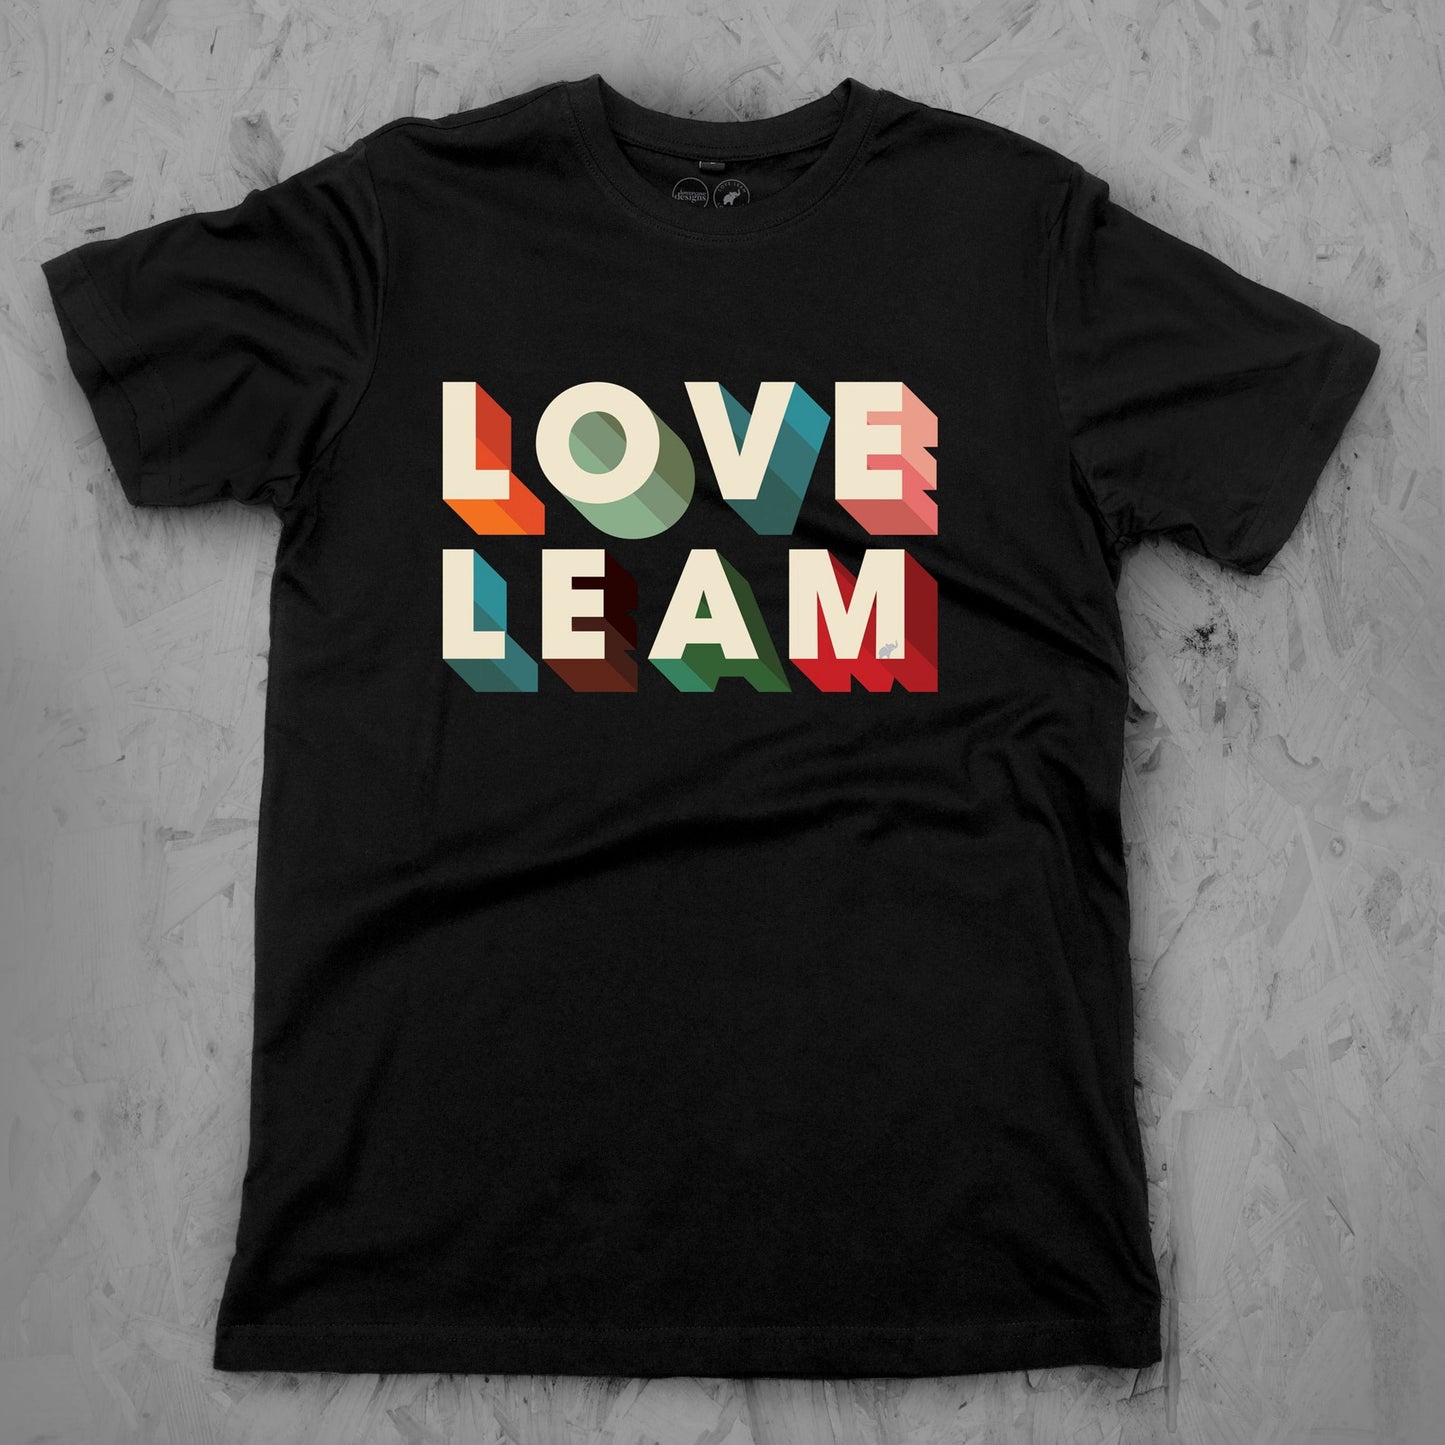 Love Leam 3 Tee Child's sizes 3-14 years